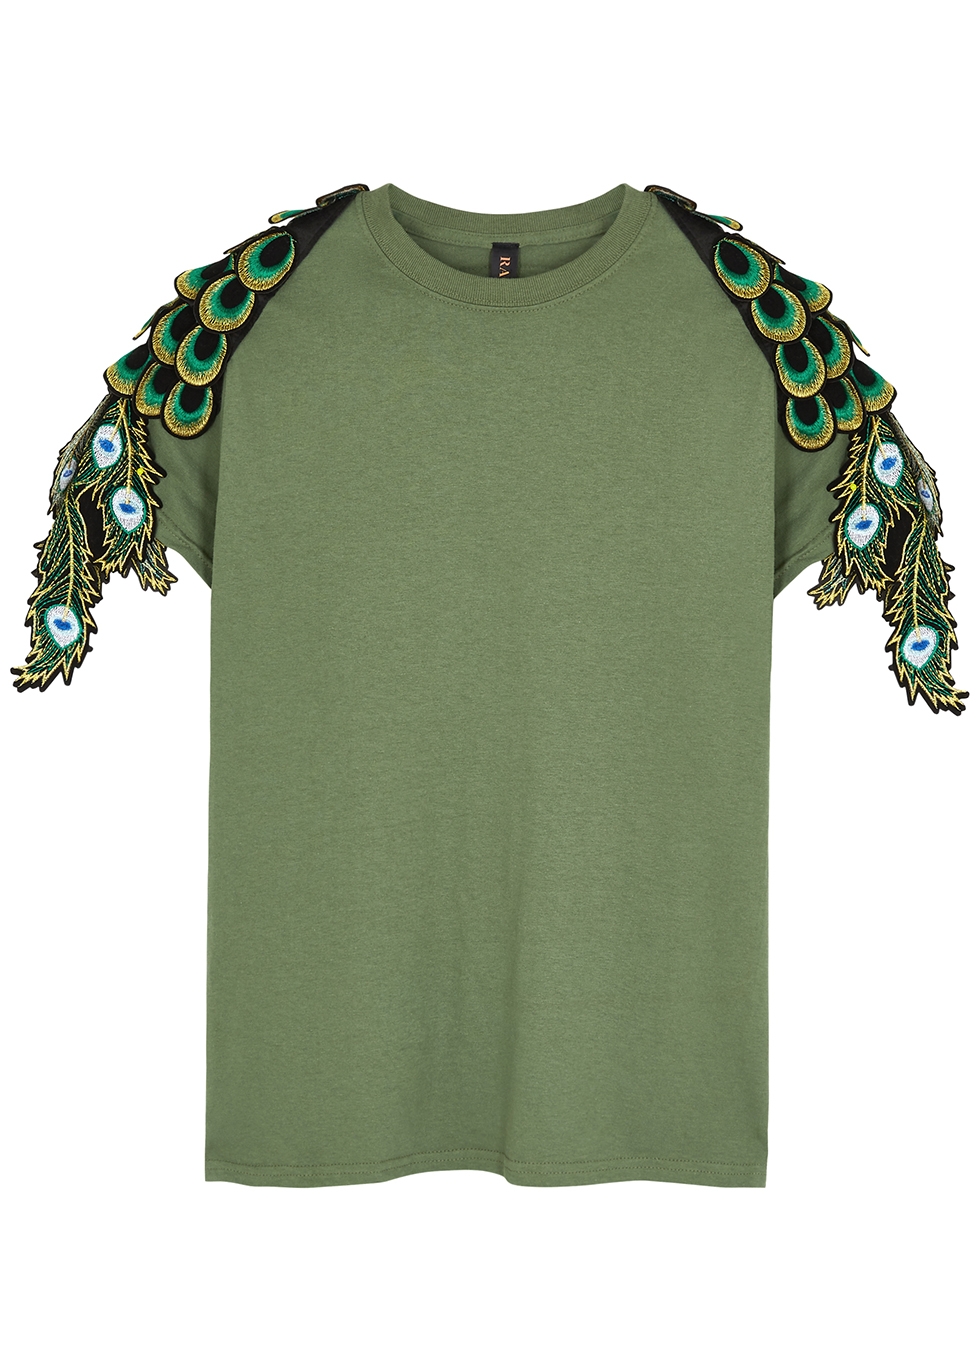 Peacock feather-appliquéd cotton T-shirt